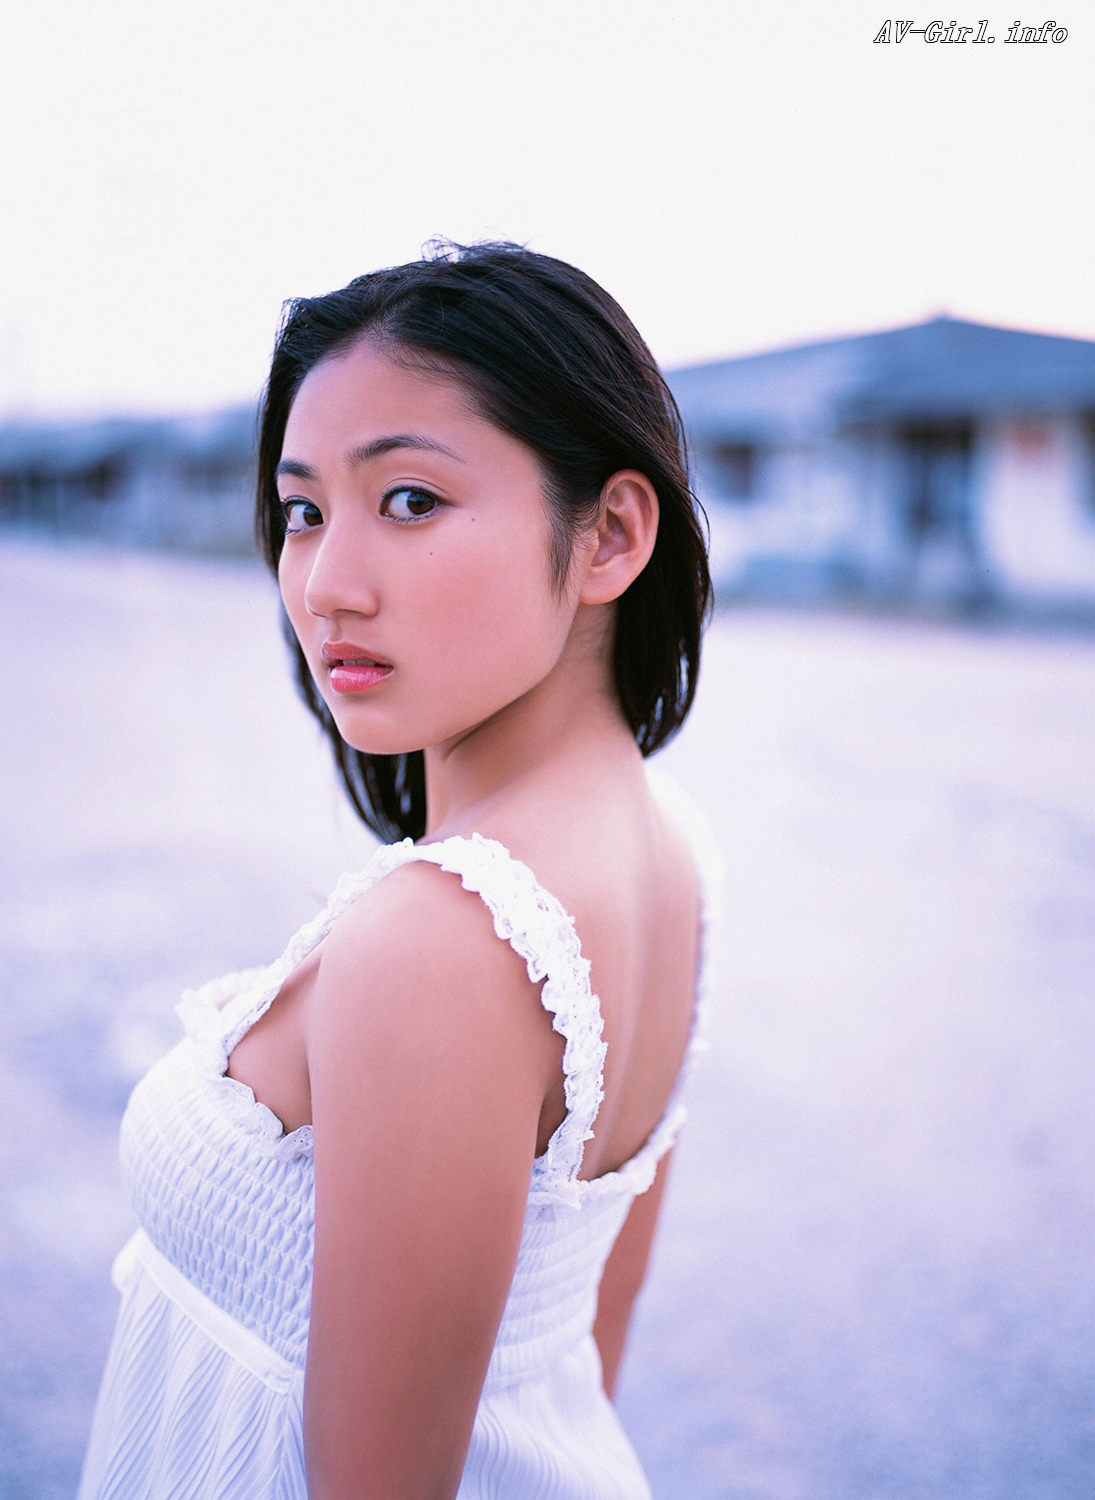 Saaya Irie Saaya Was Born On November 15 1993 In Fukuoka Japan As Saaya Irie Anabelfl